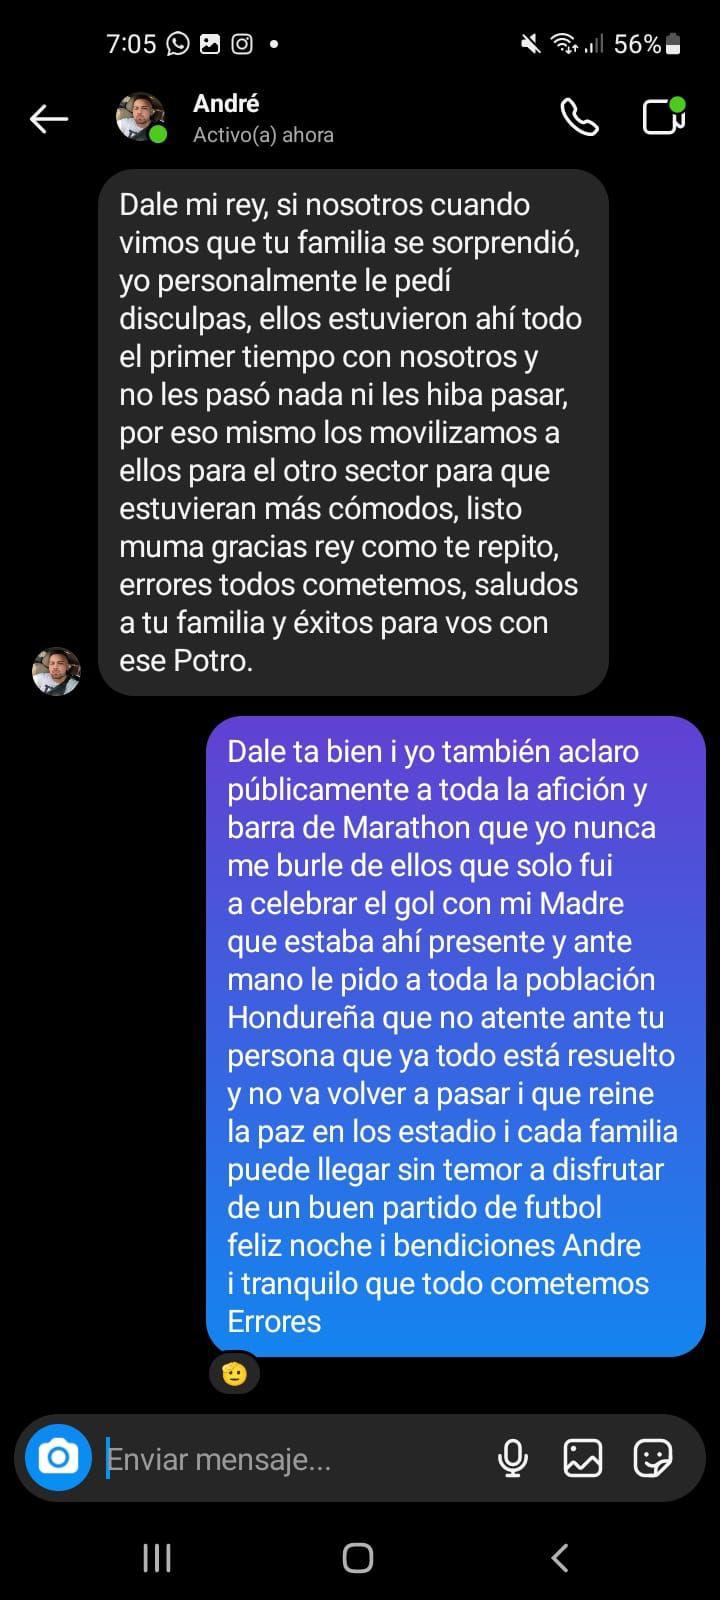 Aficionado de Marathón le pide disculpas al ‘Muma’ Fernández tras el incidente con su familia en el Yankel Rosenthal